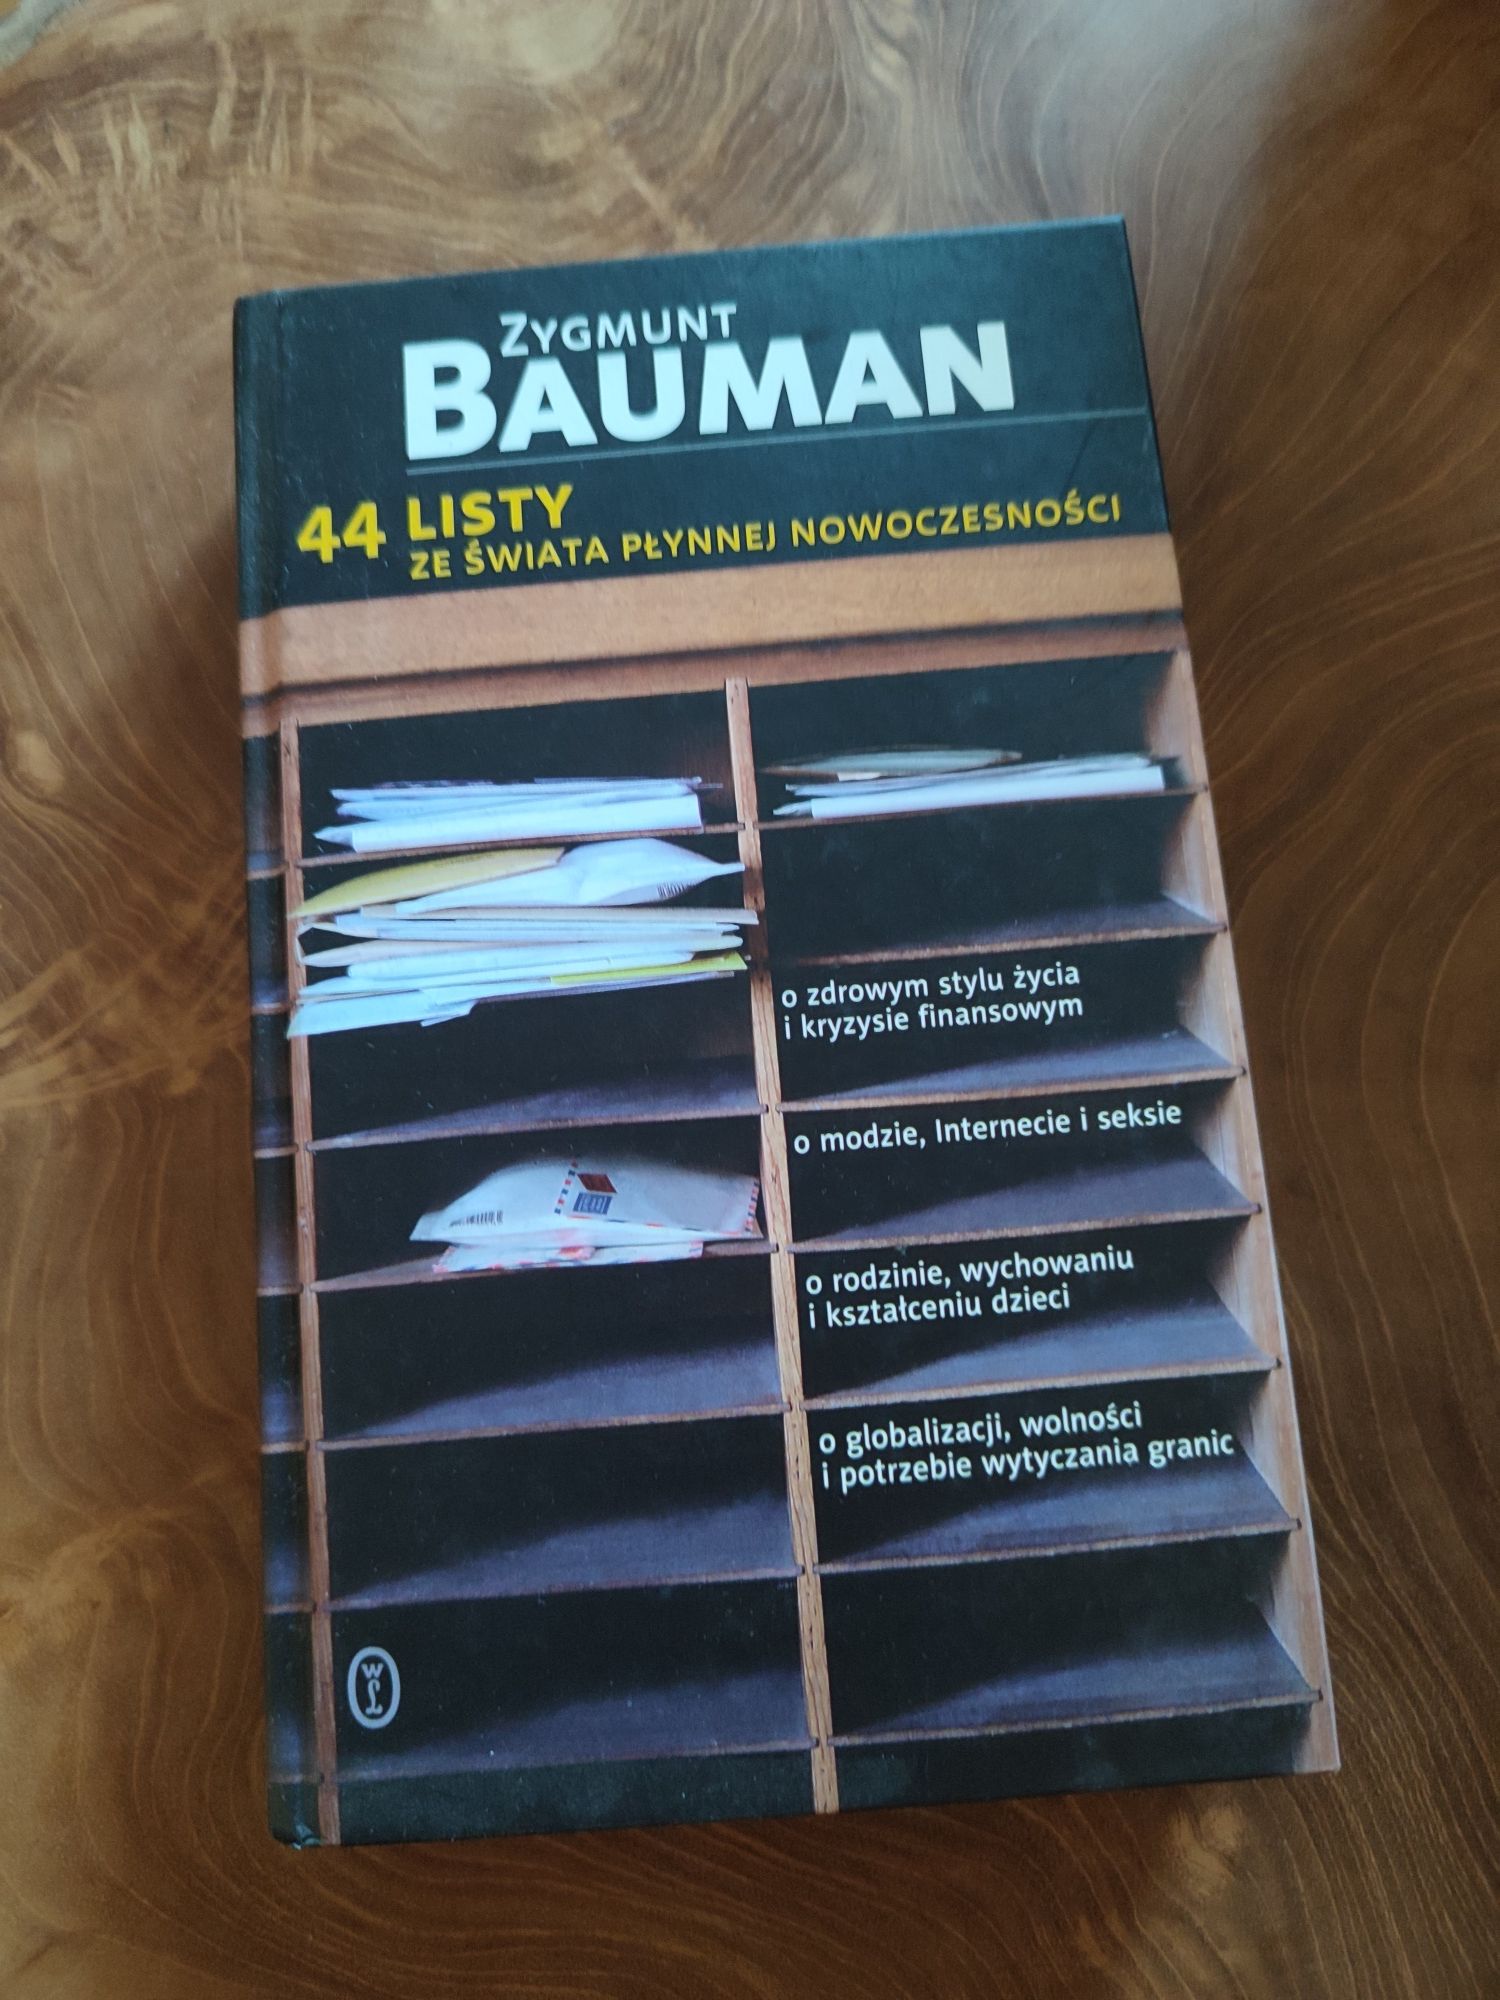 Zygmunt Bauman, 44 listy ze świata płynnej nowoczesności